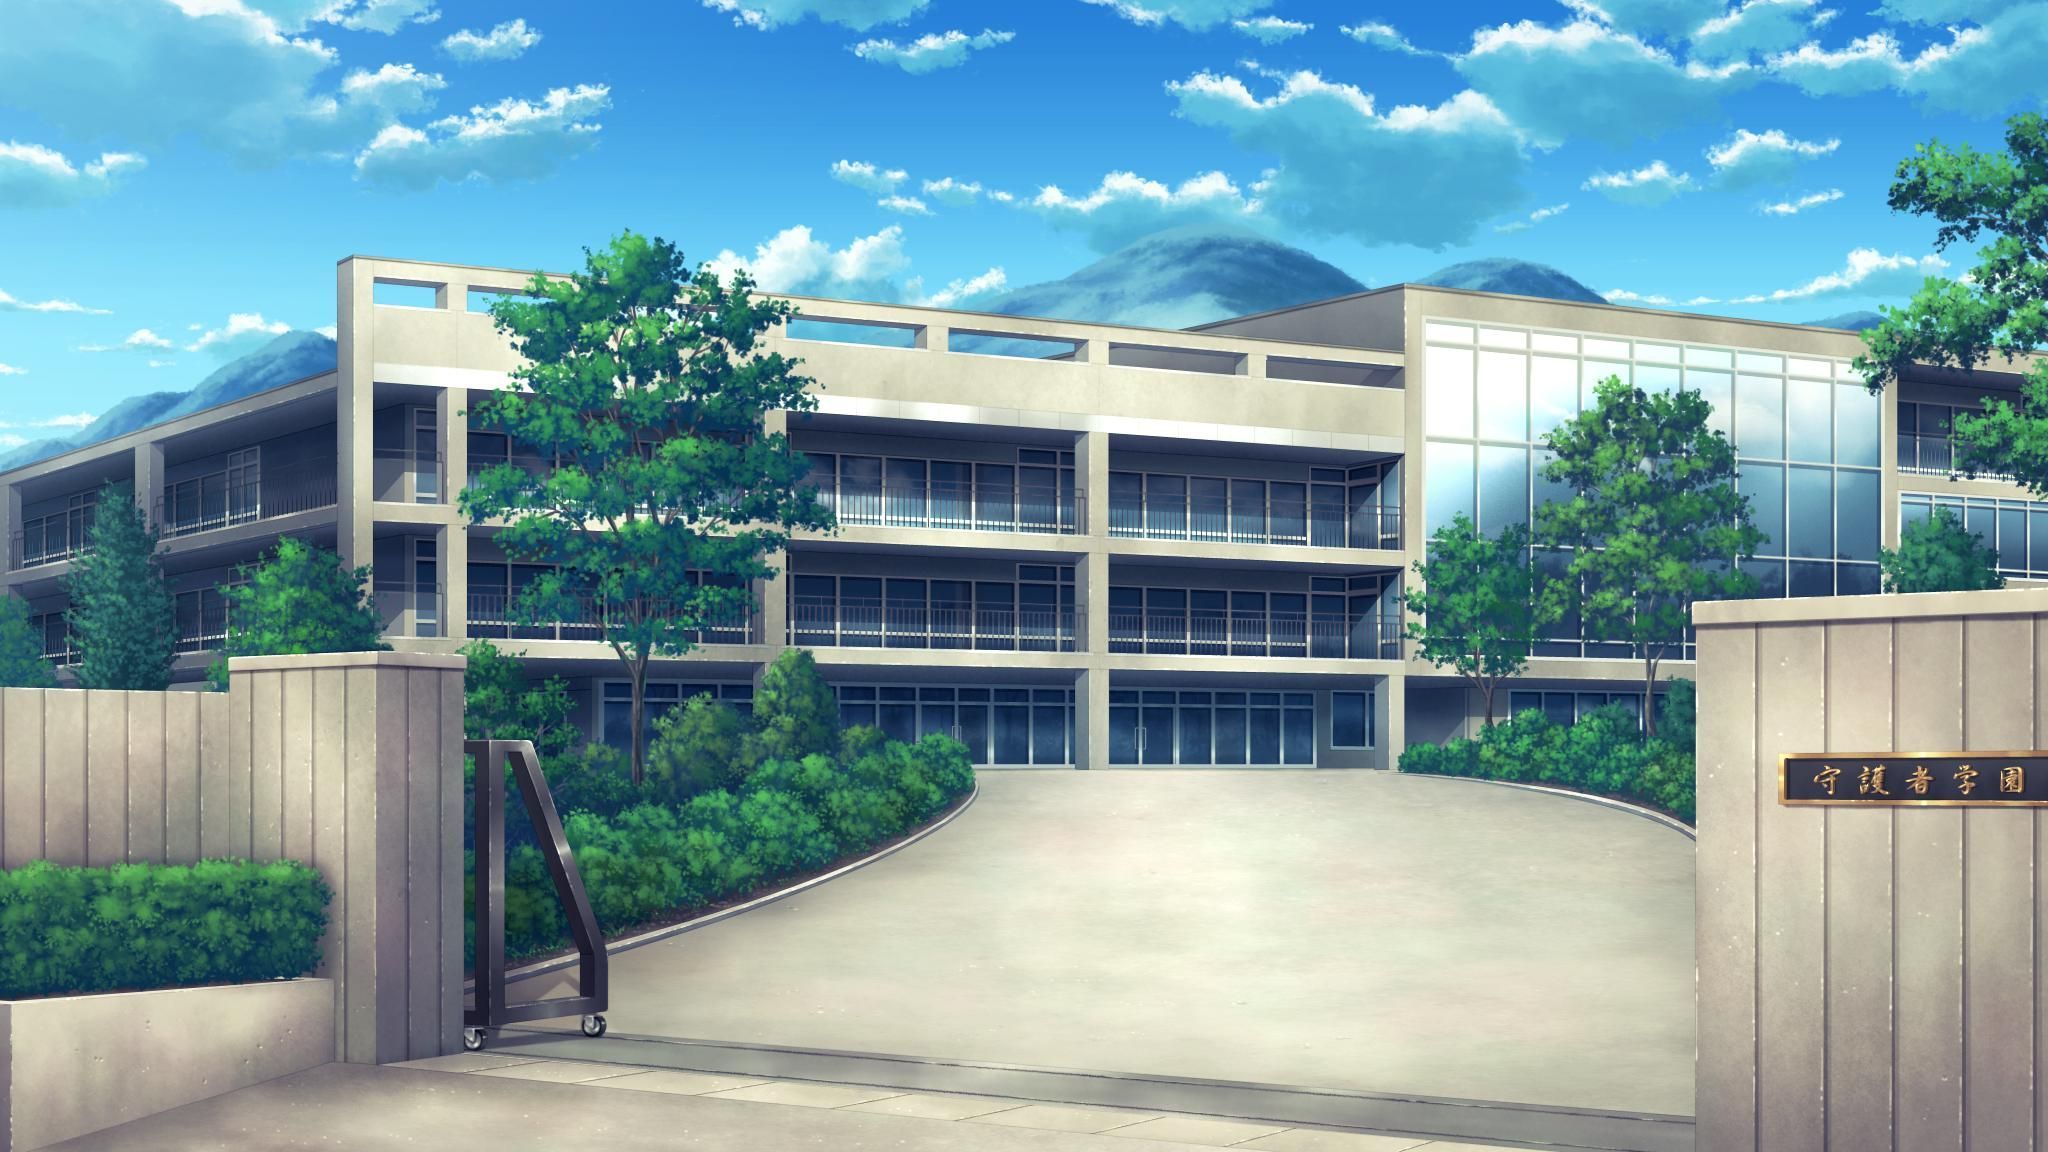 Anime School Scenery Wallpapers - Top Những Hình Ảnh Đẹp